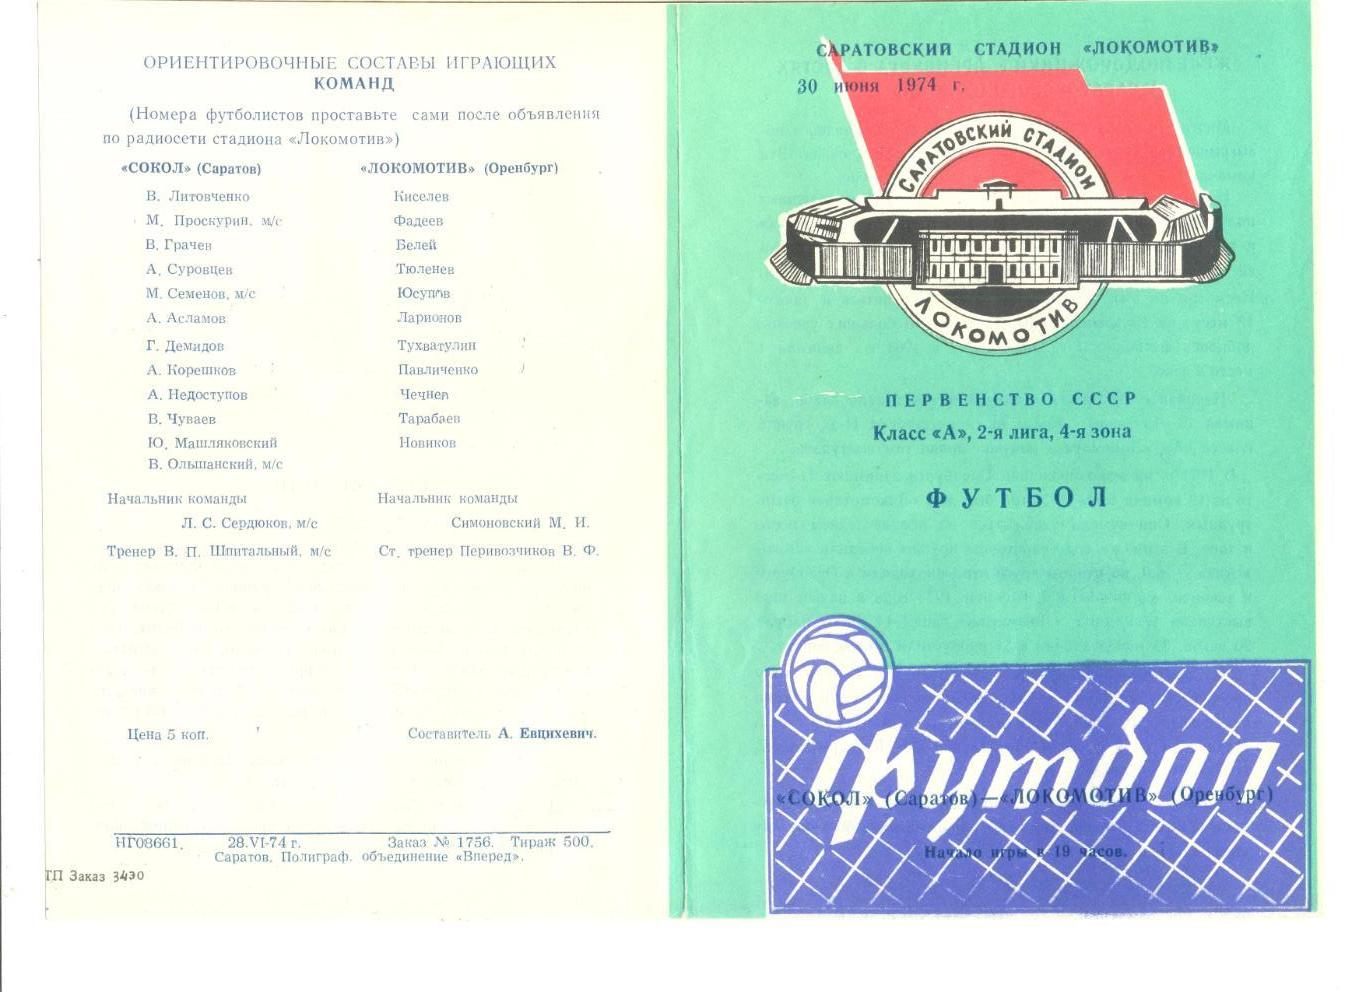 Сокол Саратов - Локомотив Оренбург 30.06.1974 г.